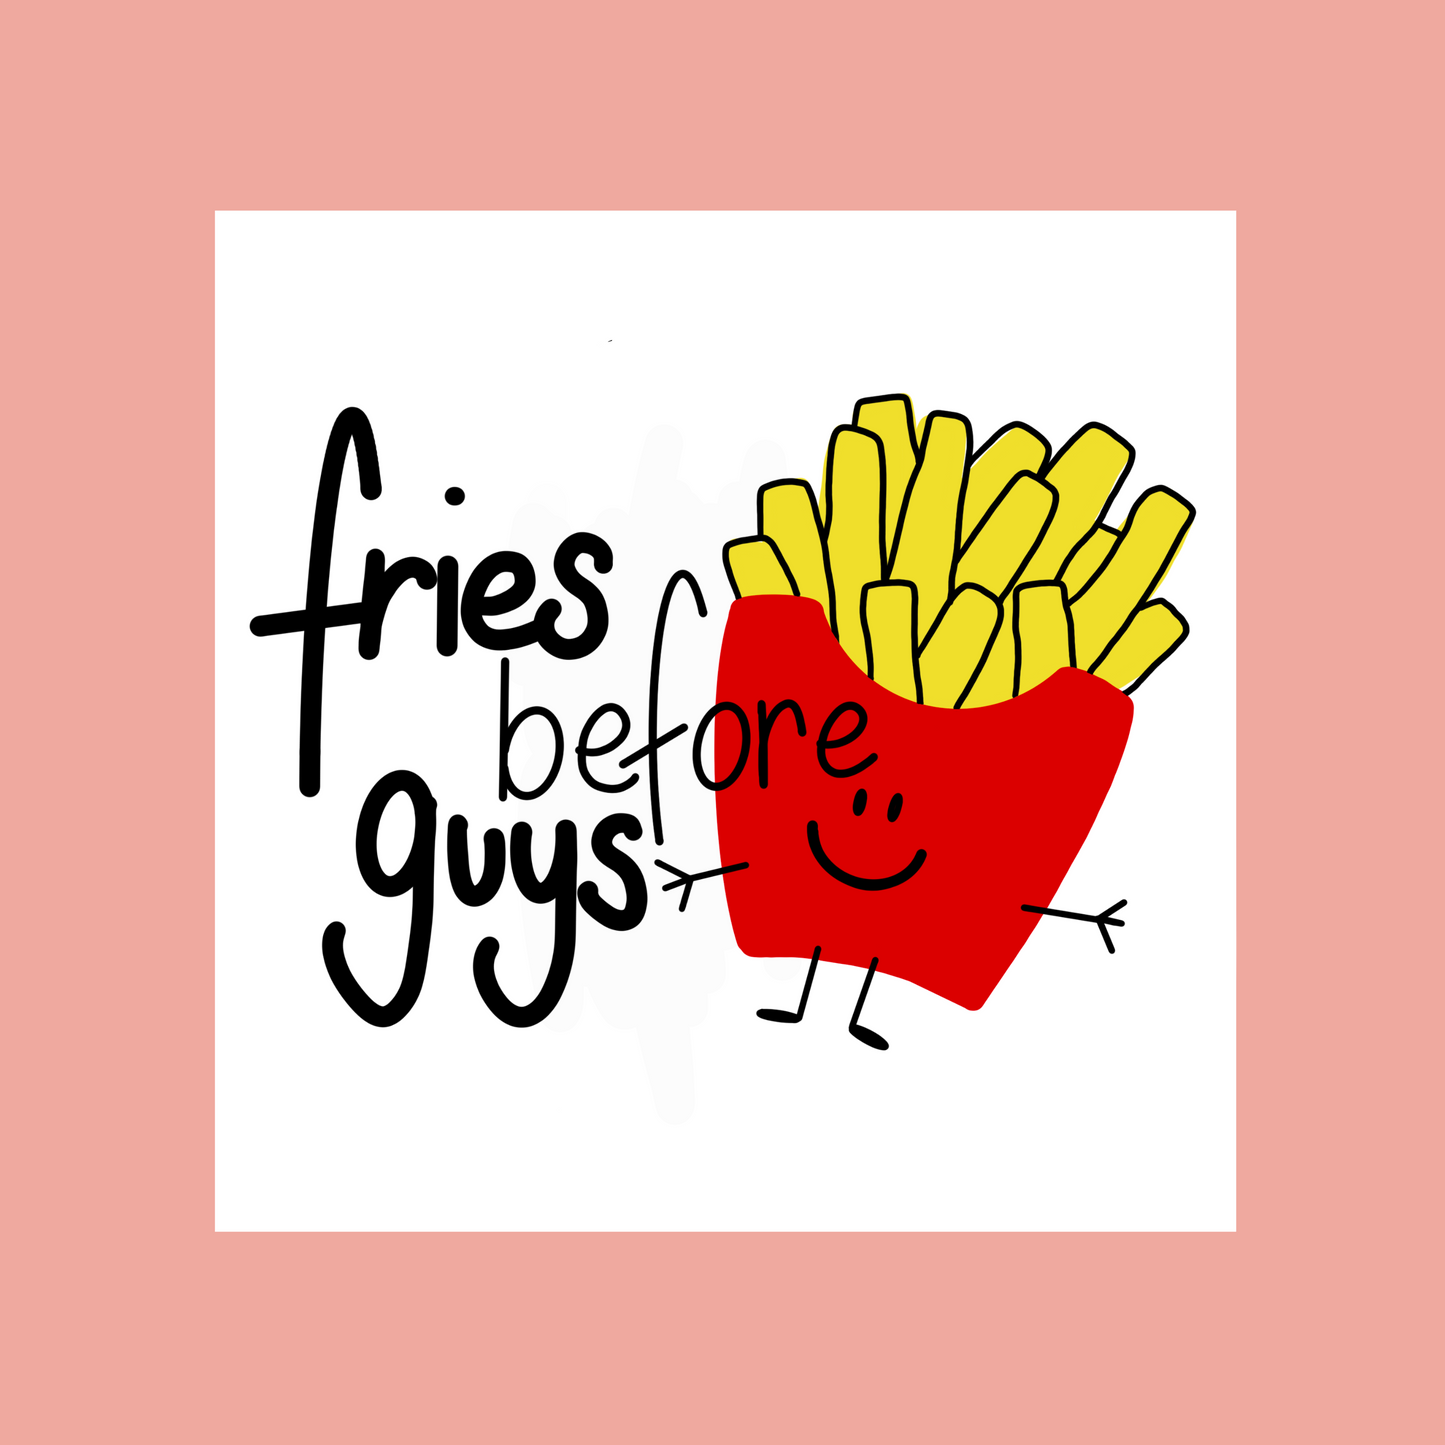 Plotterdatei "Fries before Guys"